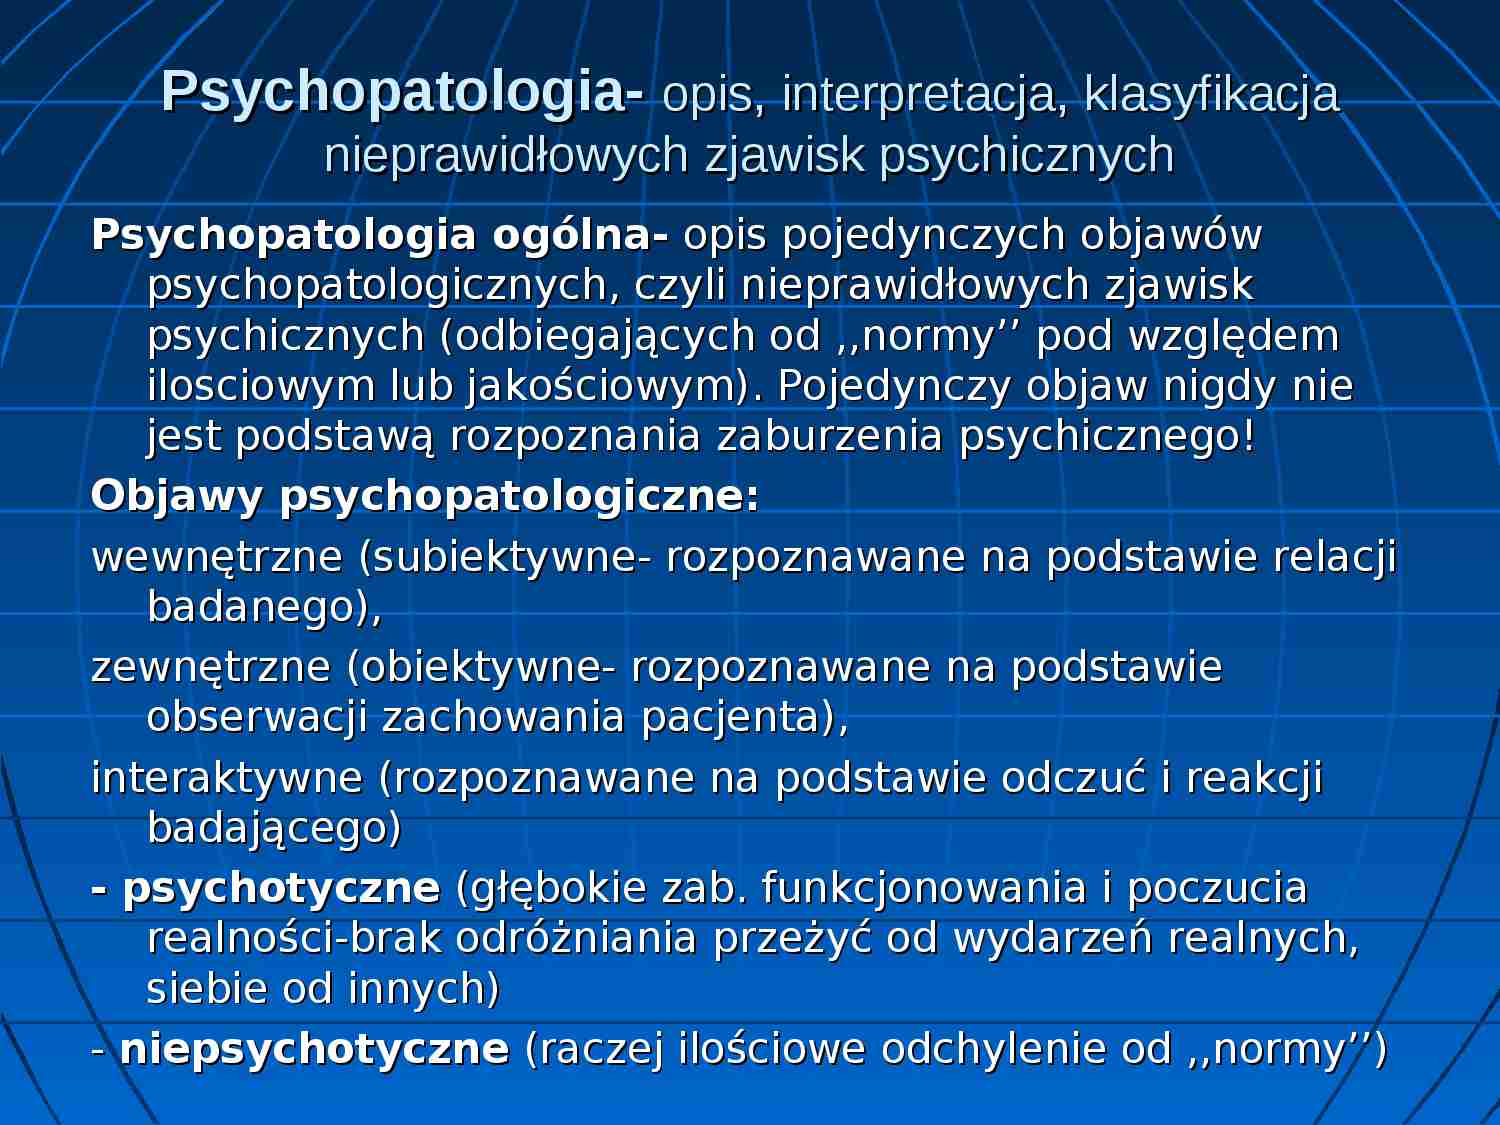 Psychopatologia ogólna - strona 1